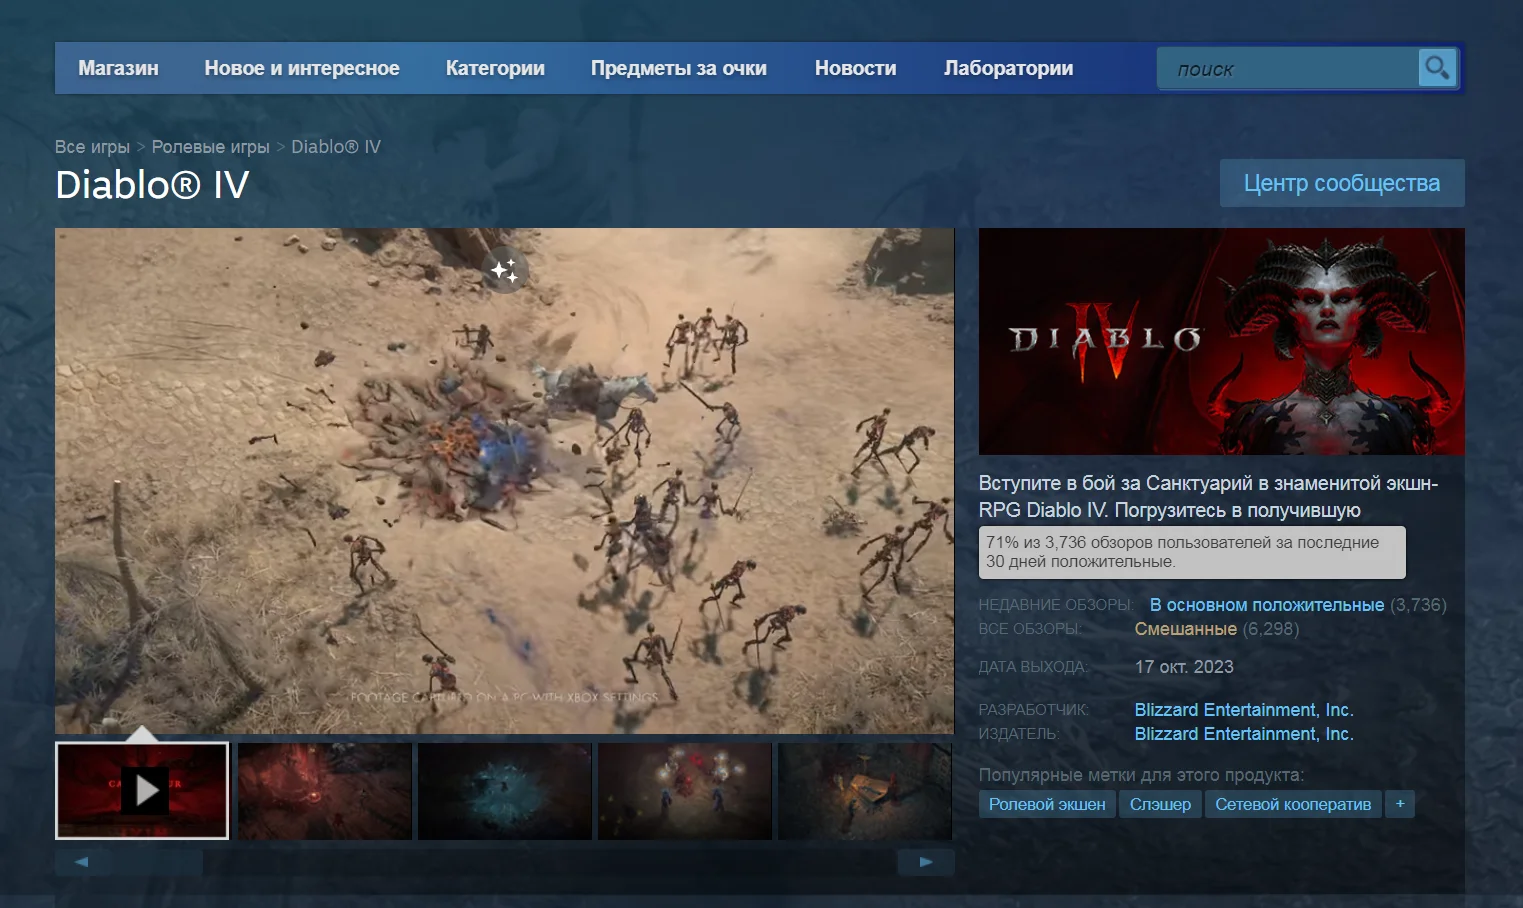 Свежие отзывы на Diablo 4 в Steam сменились на «в основном положительные» - фото 1